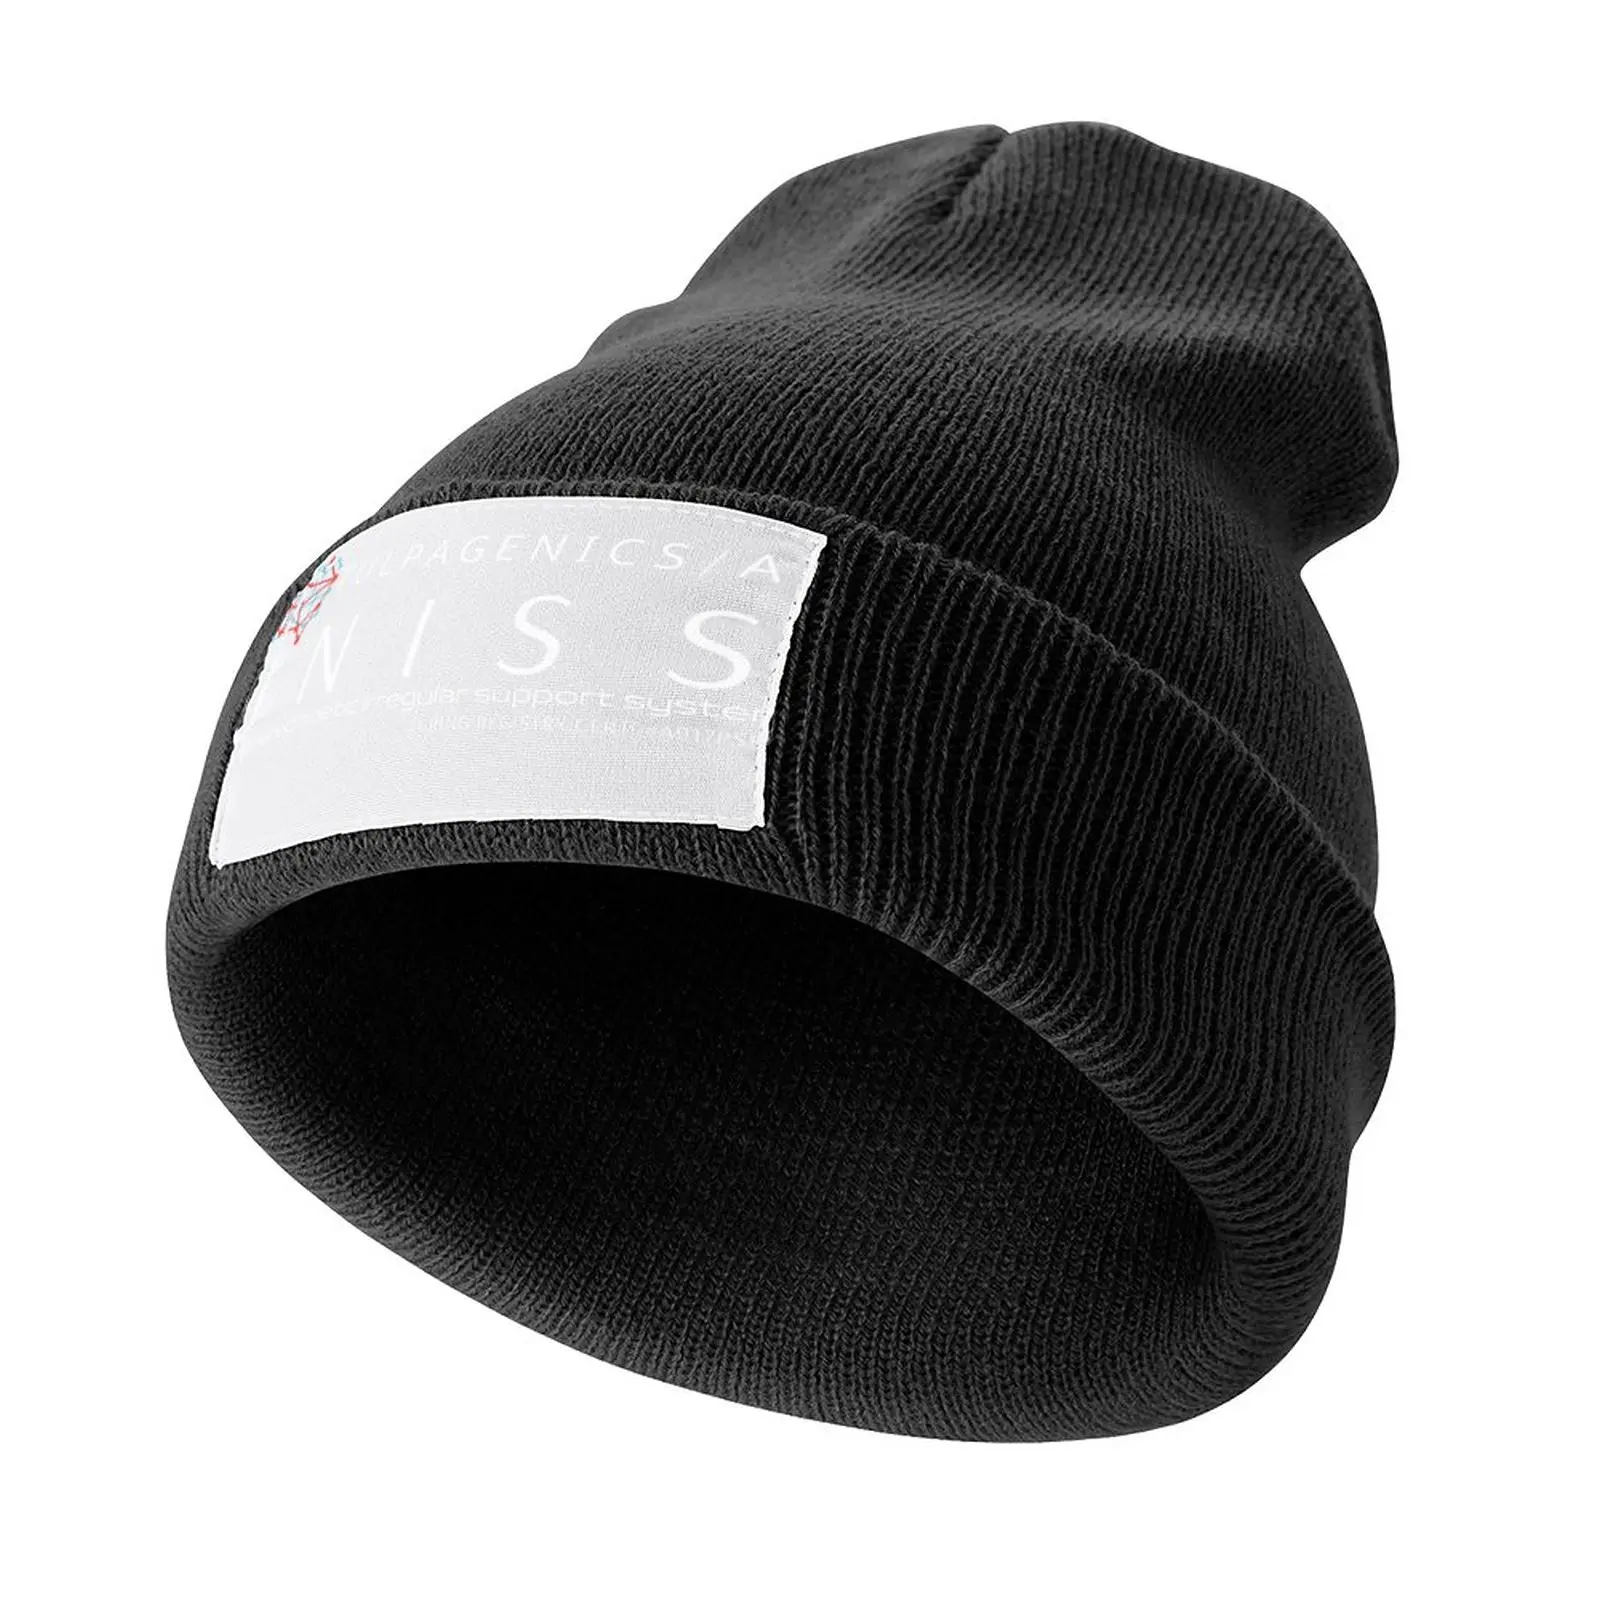 UNISS от Tulpagenics 1.0 - Белая (Агентство футболок Уильяма Гибсона) Вязаная шапка-дерби с солнцезащитным кремом, рейв-шляпа для гольфа, Мужская Женская Изображение 0